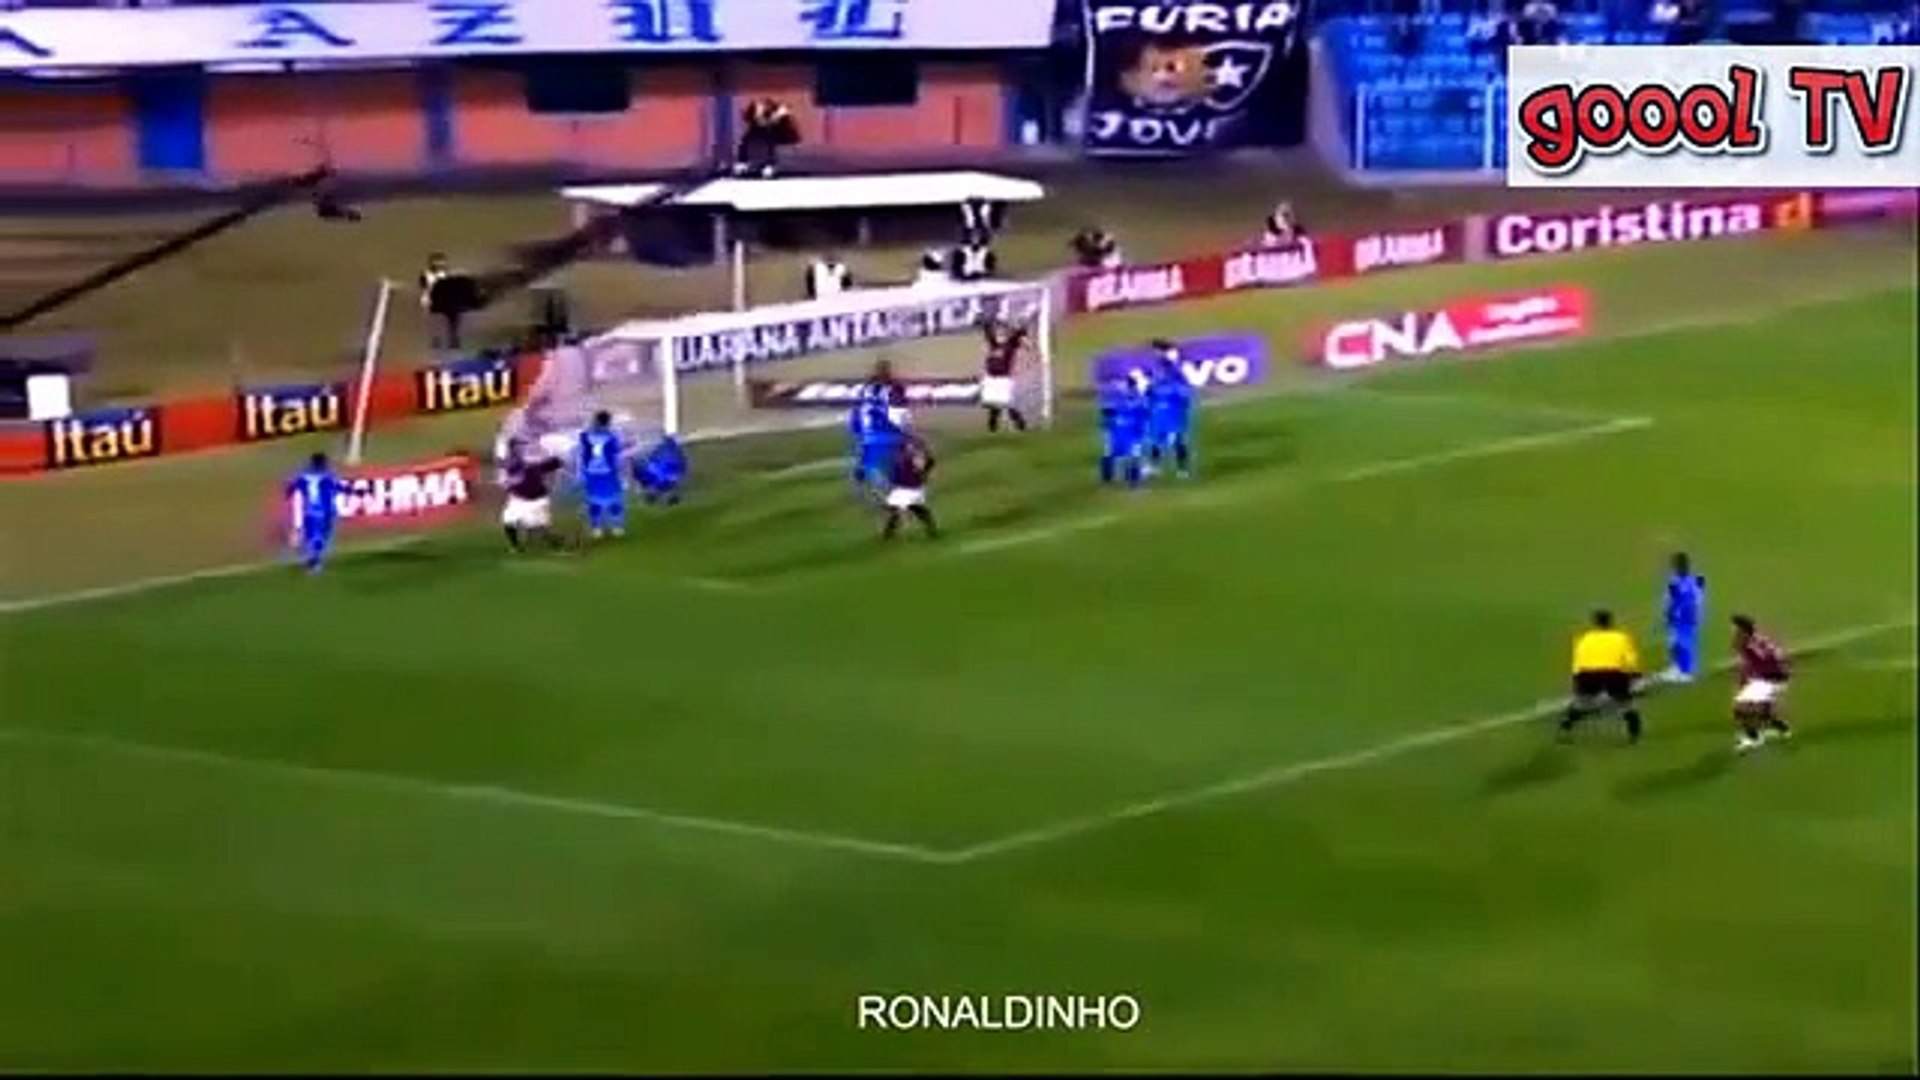 Best Corner Kick Goal in Football (goool tv) - video Dailymotion